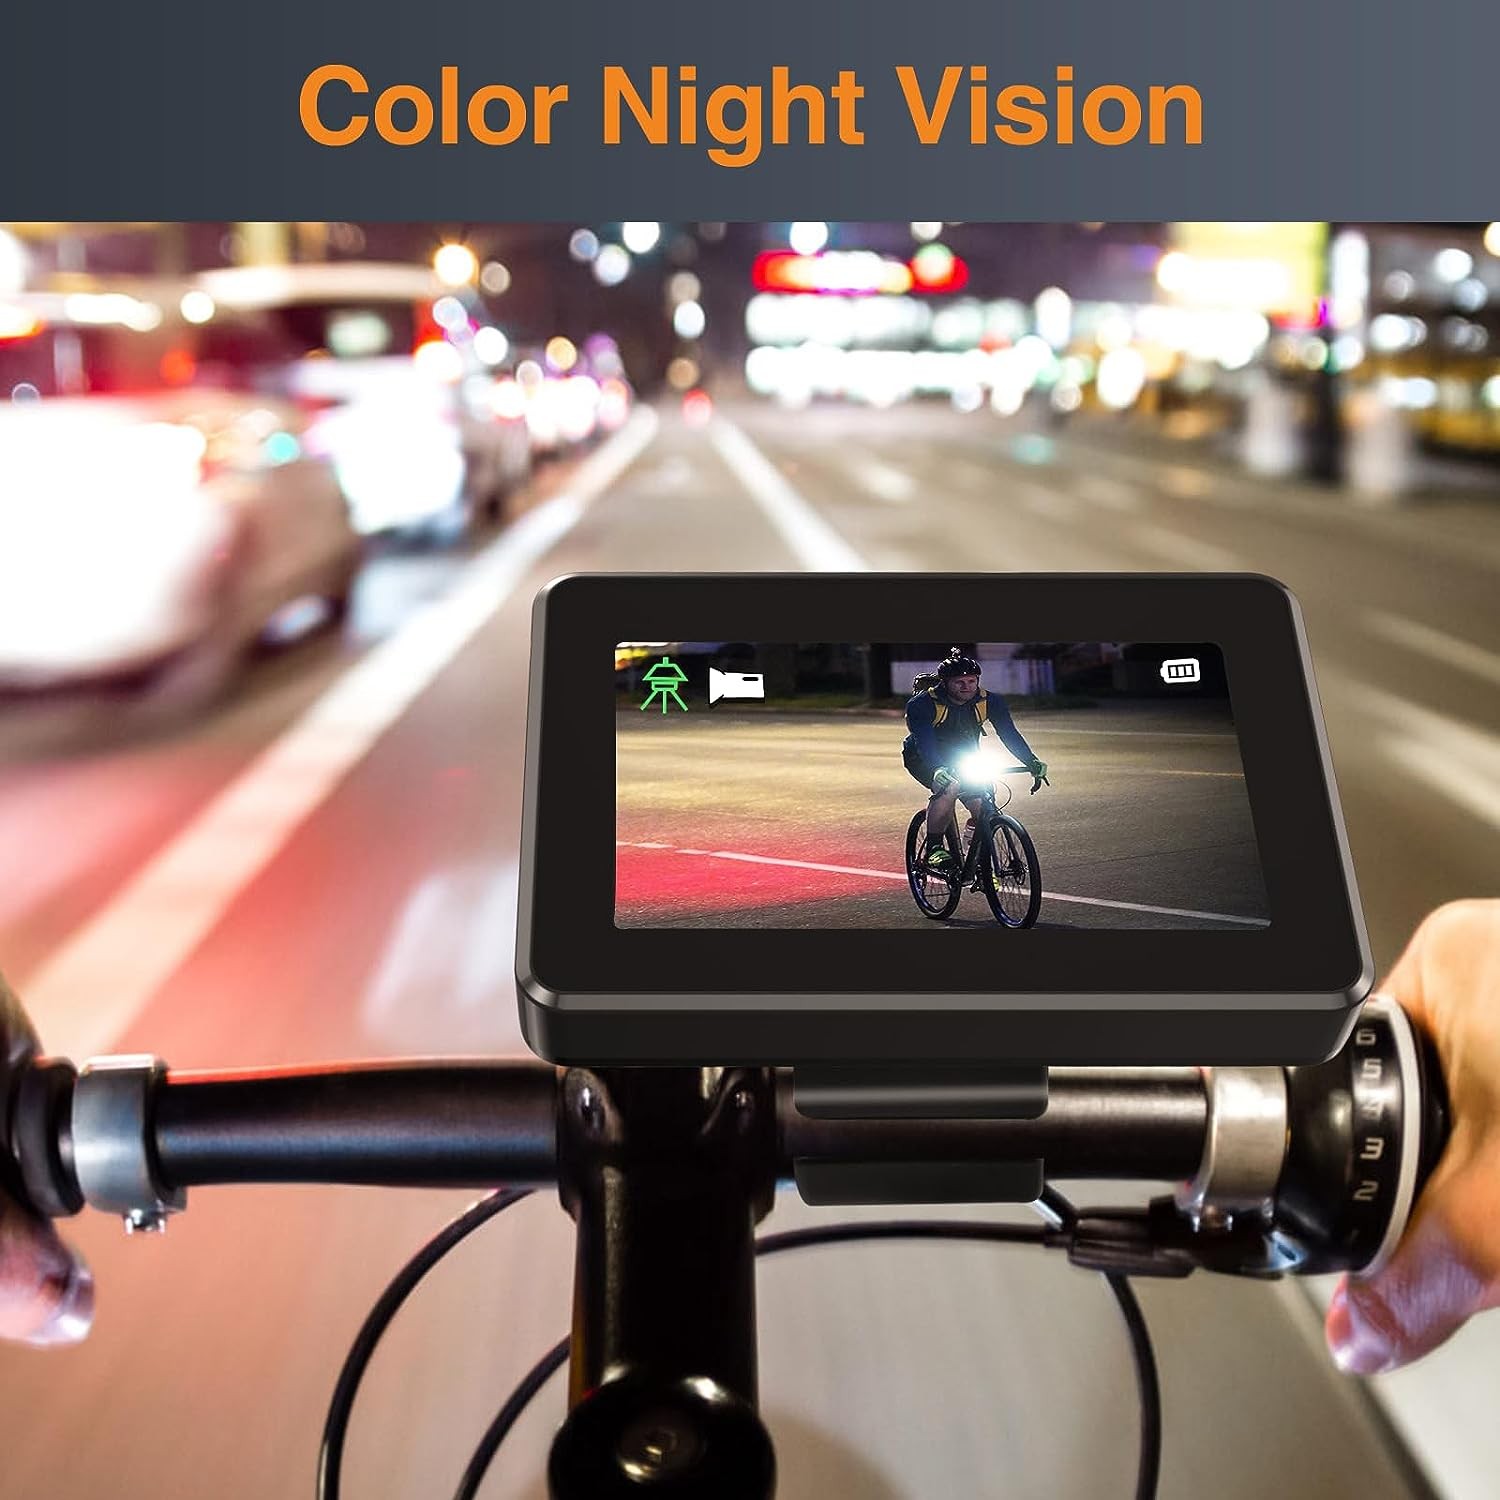 moniteur de vélo avec caméra avec vision nocturne